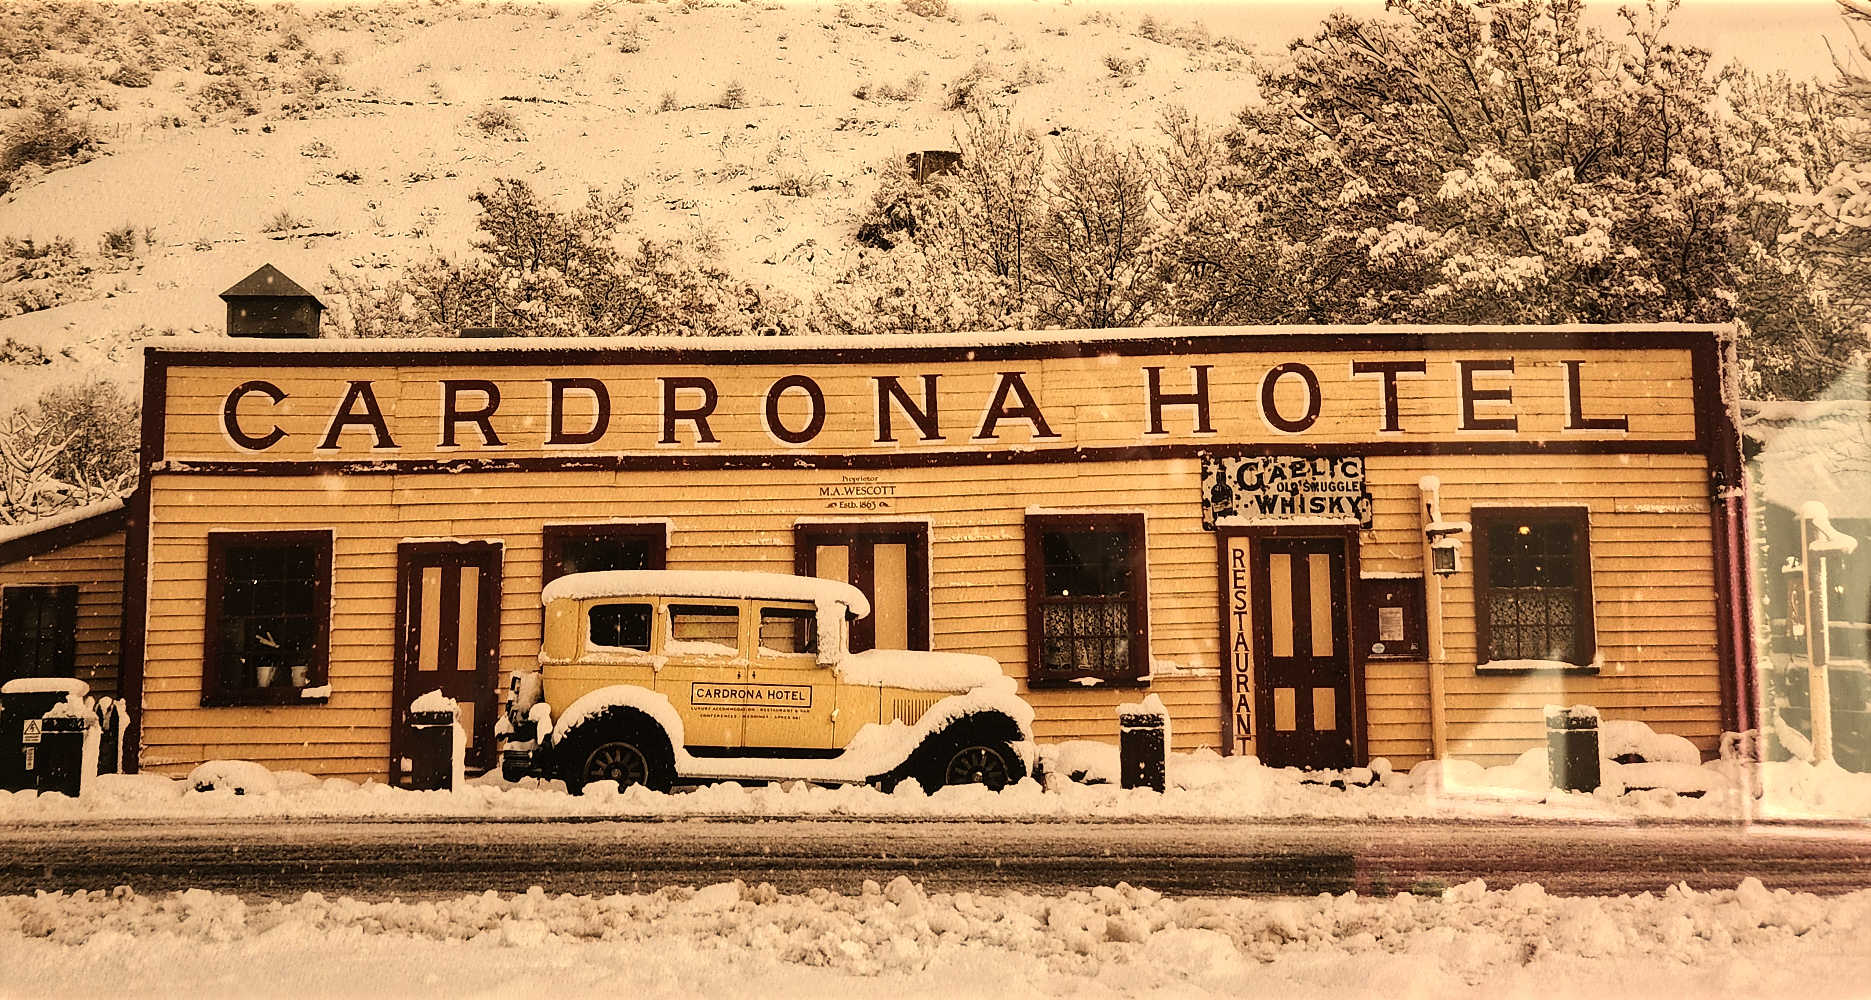 Cardrona Hotel Wanaka winter snow, South Island, New Zealand